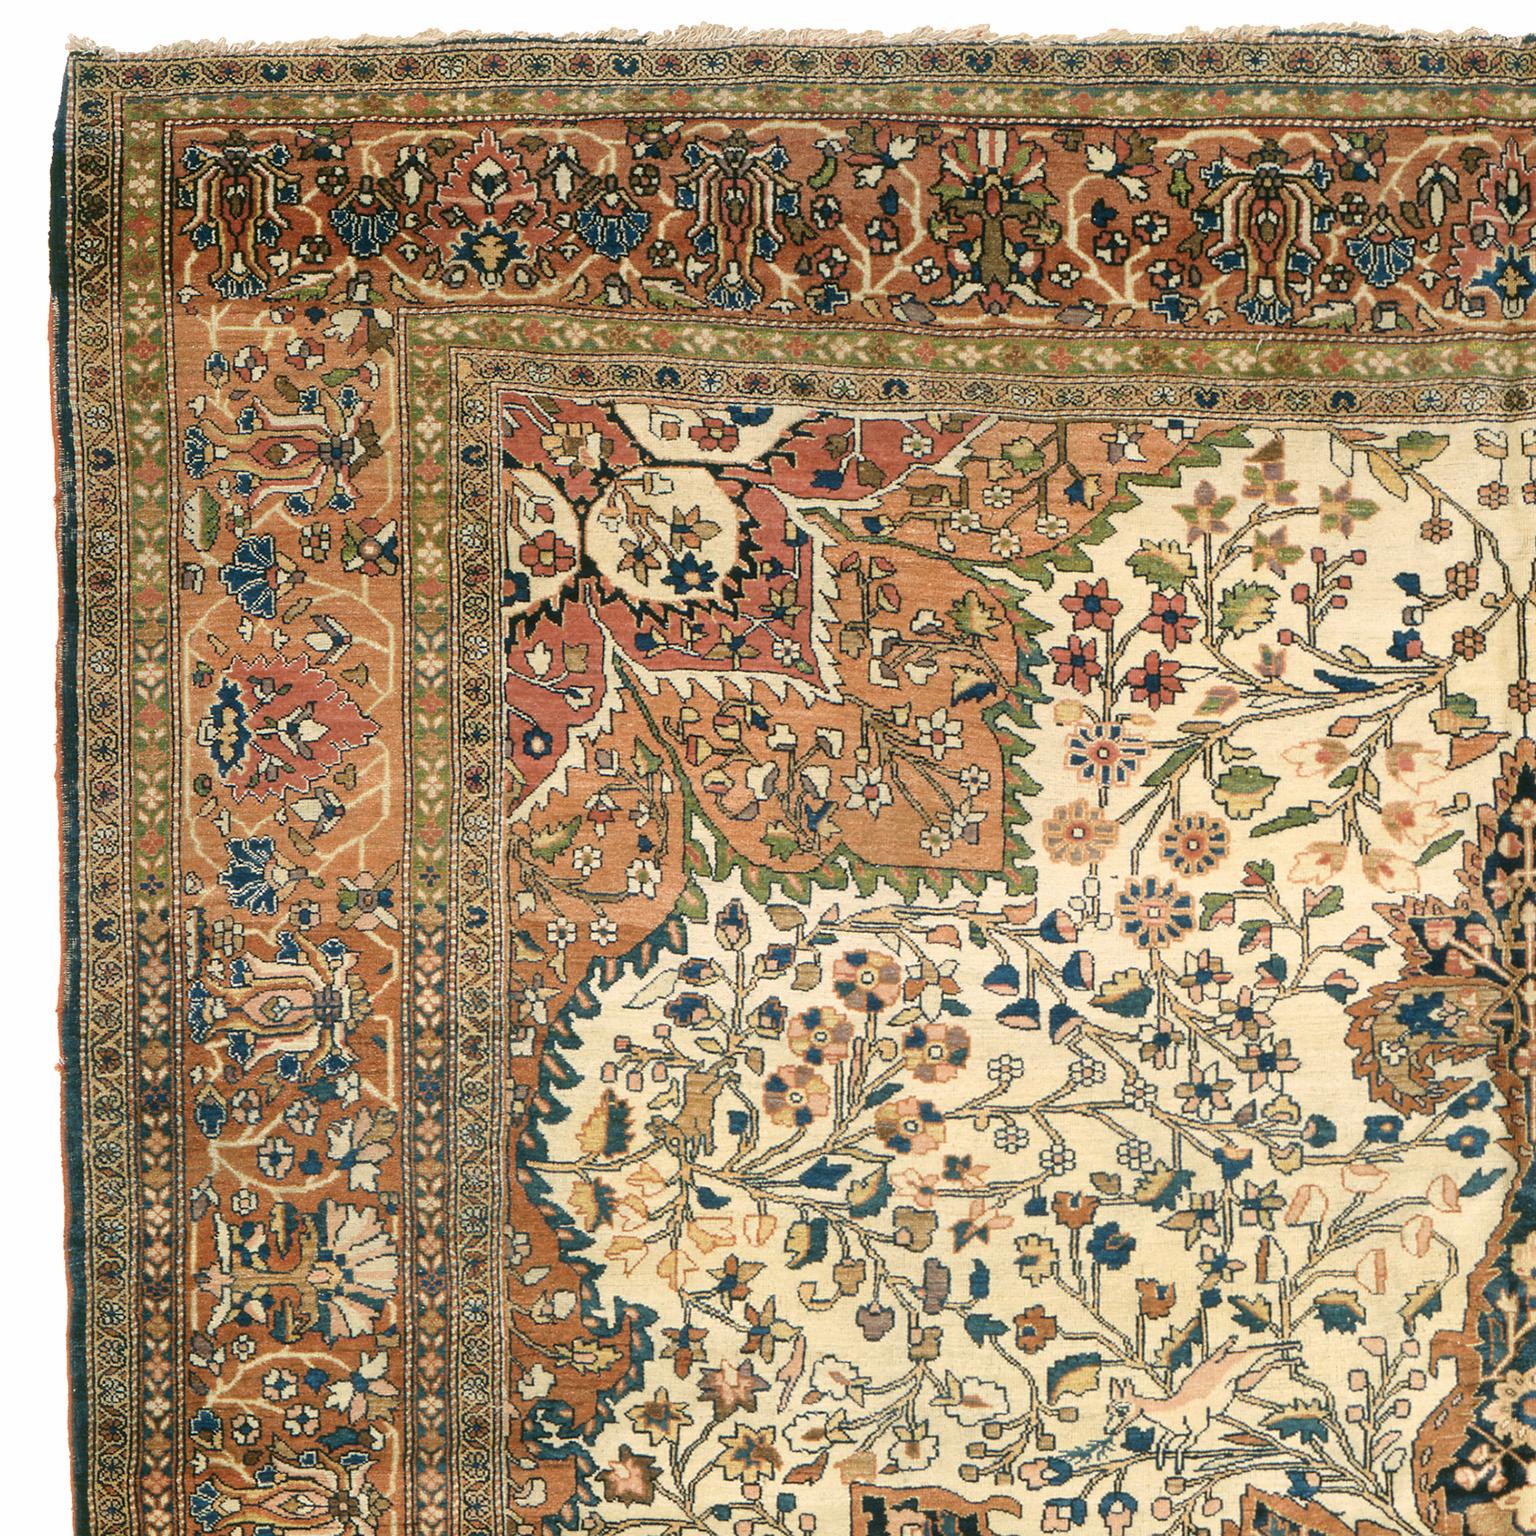 Persia, circa 1890
Size: 11'11